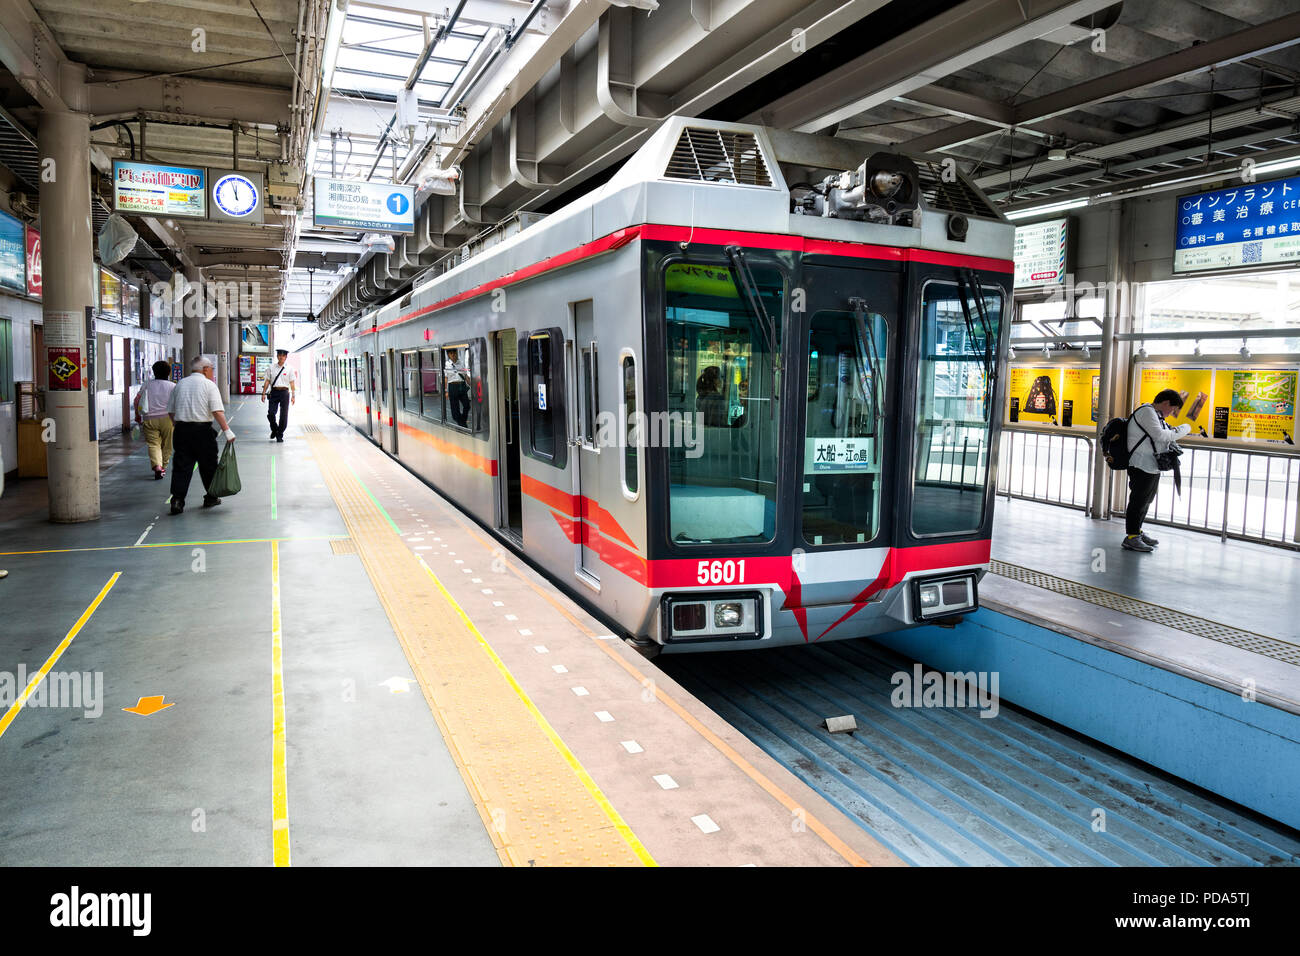 Le Japon, l'île de Honshu, le Kanto, la compagnie d'Enoshima, Shonan monorail suspendu entre Enoshima et Ofuna. Banque D'Images